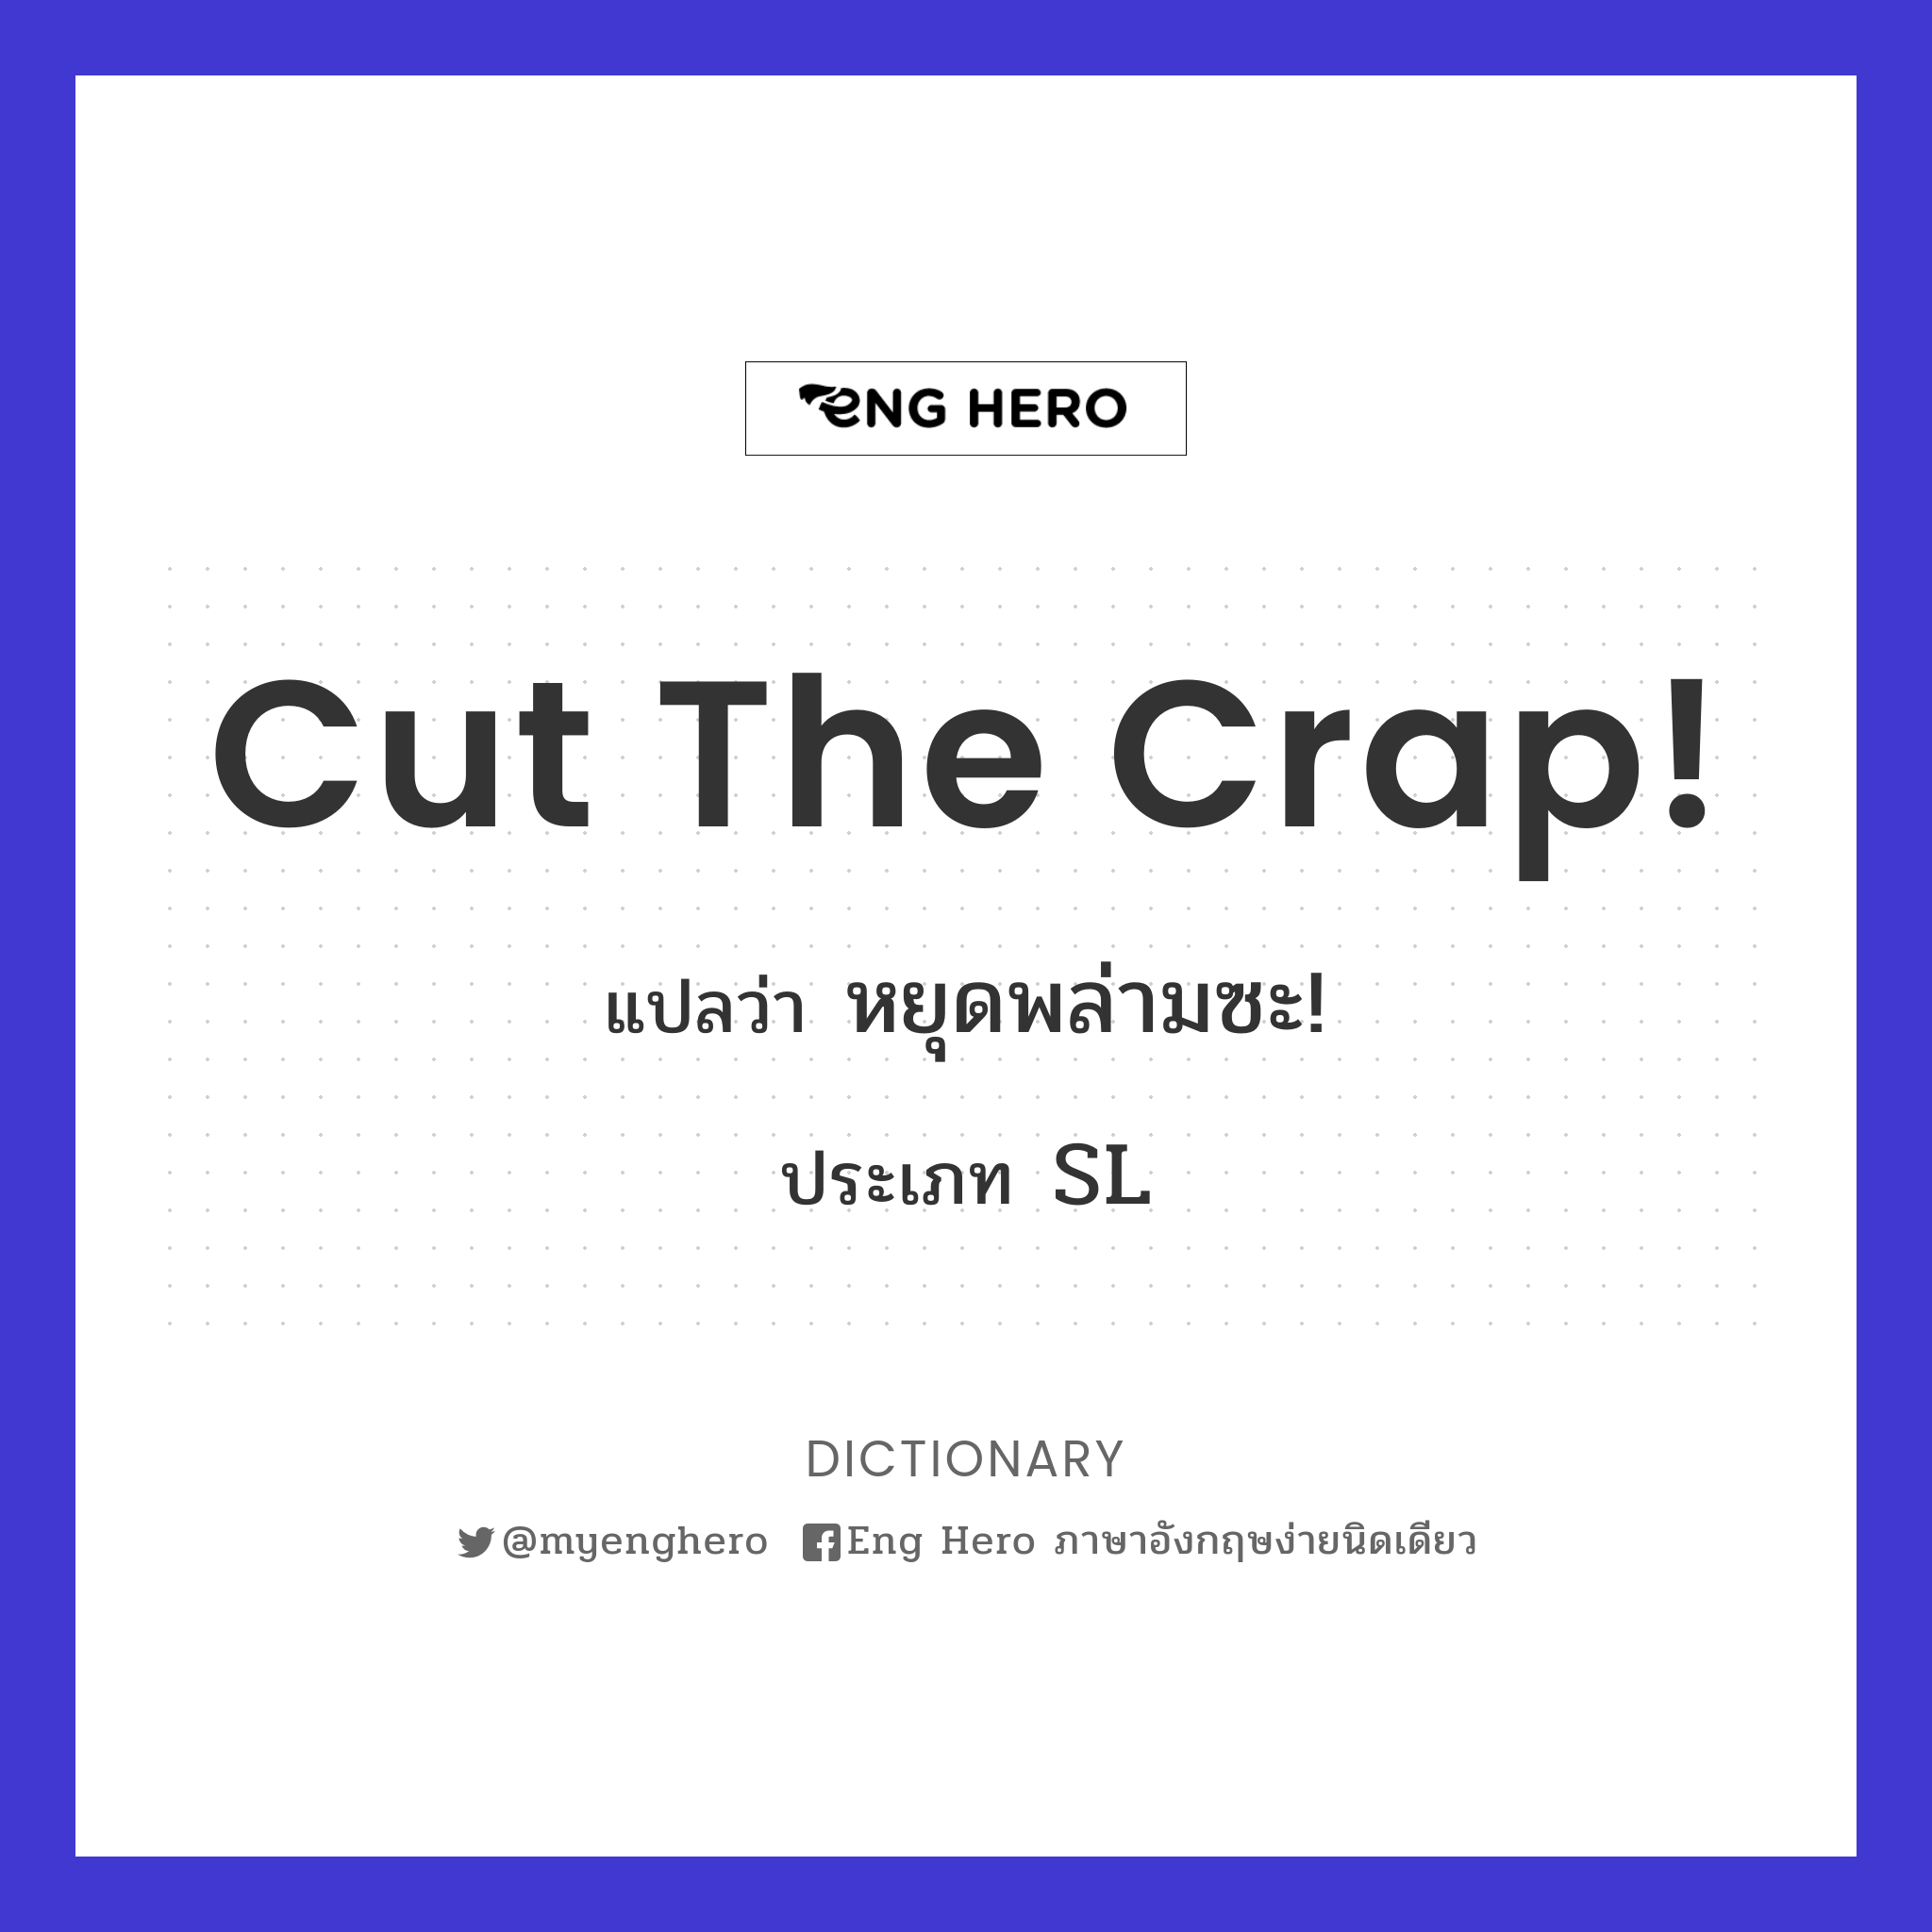 cut the crap!